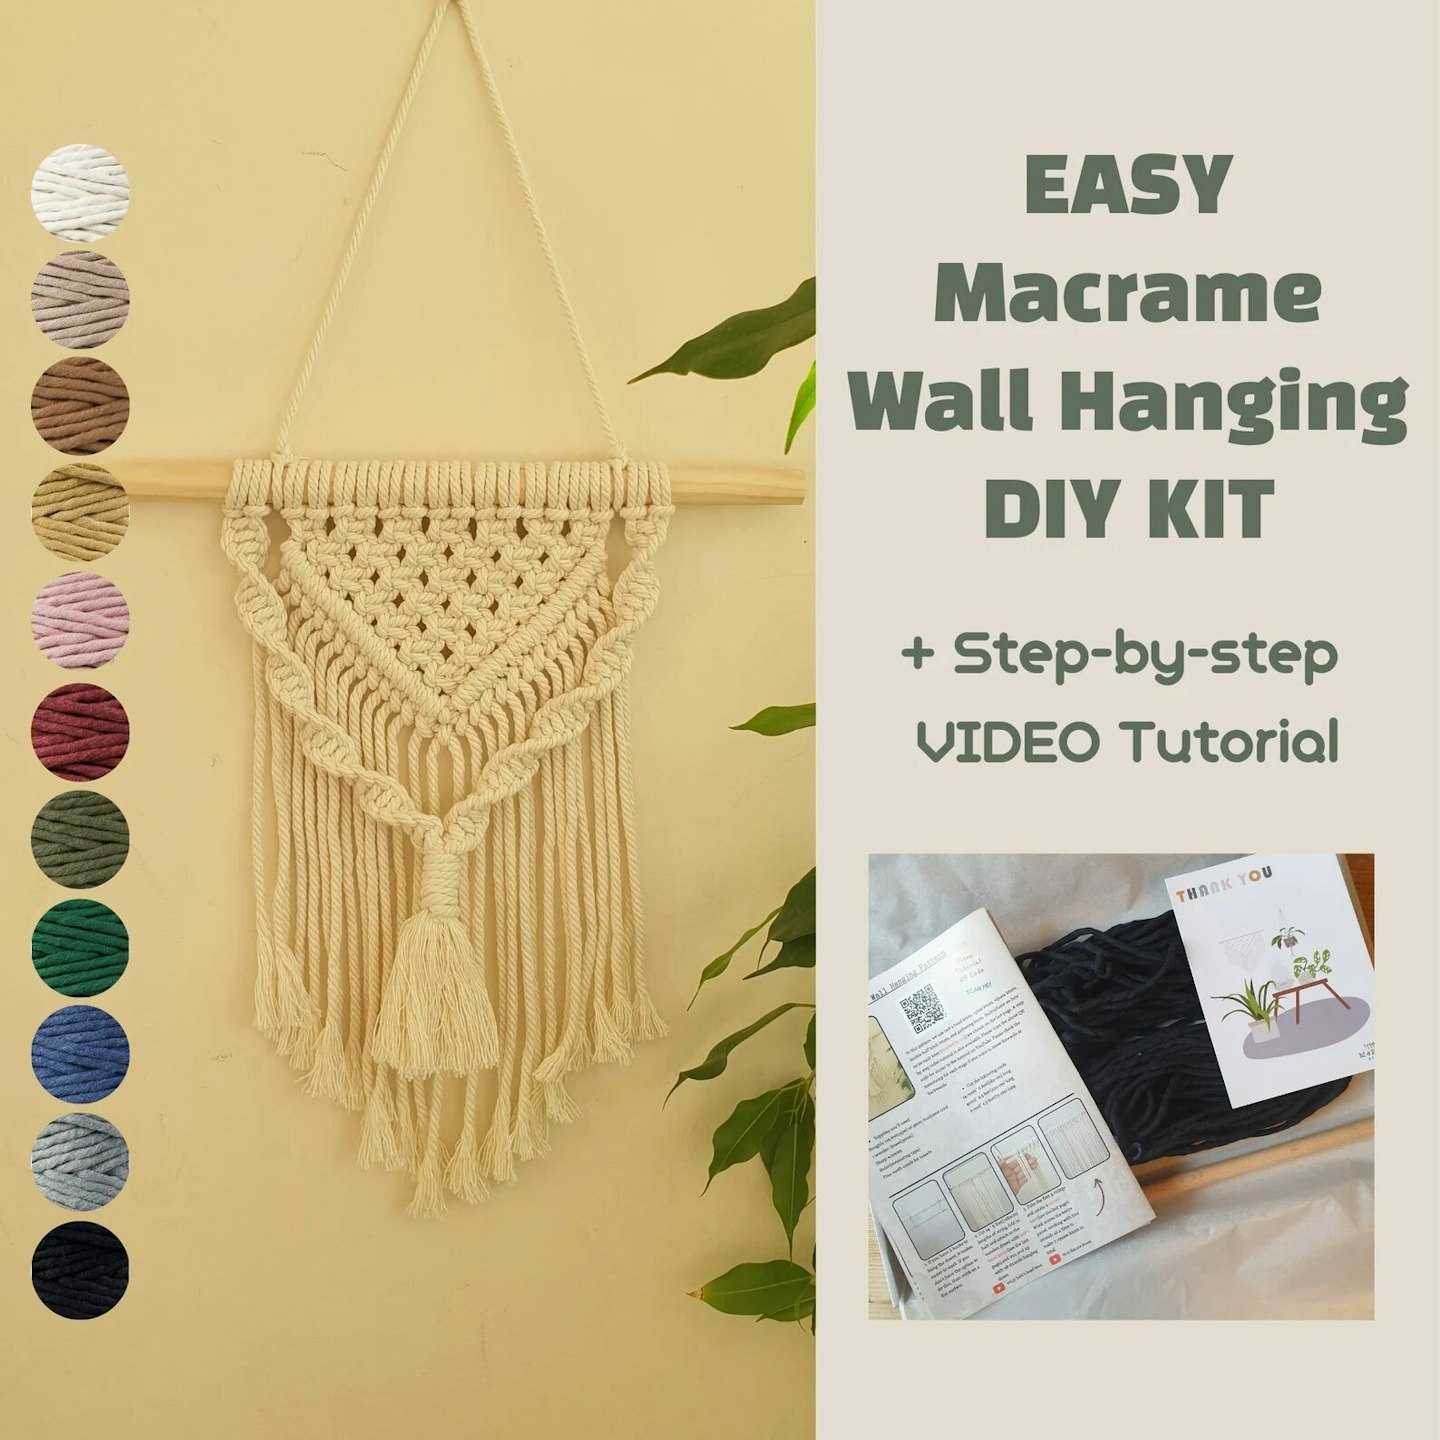 Easy macrame wall hanging kit